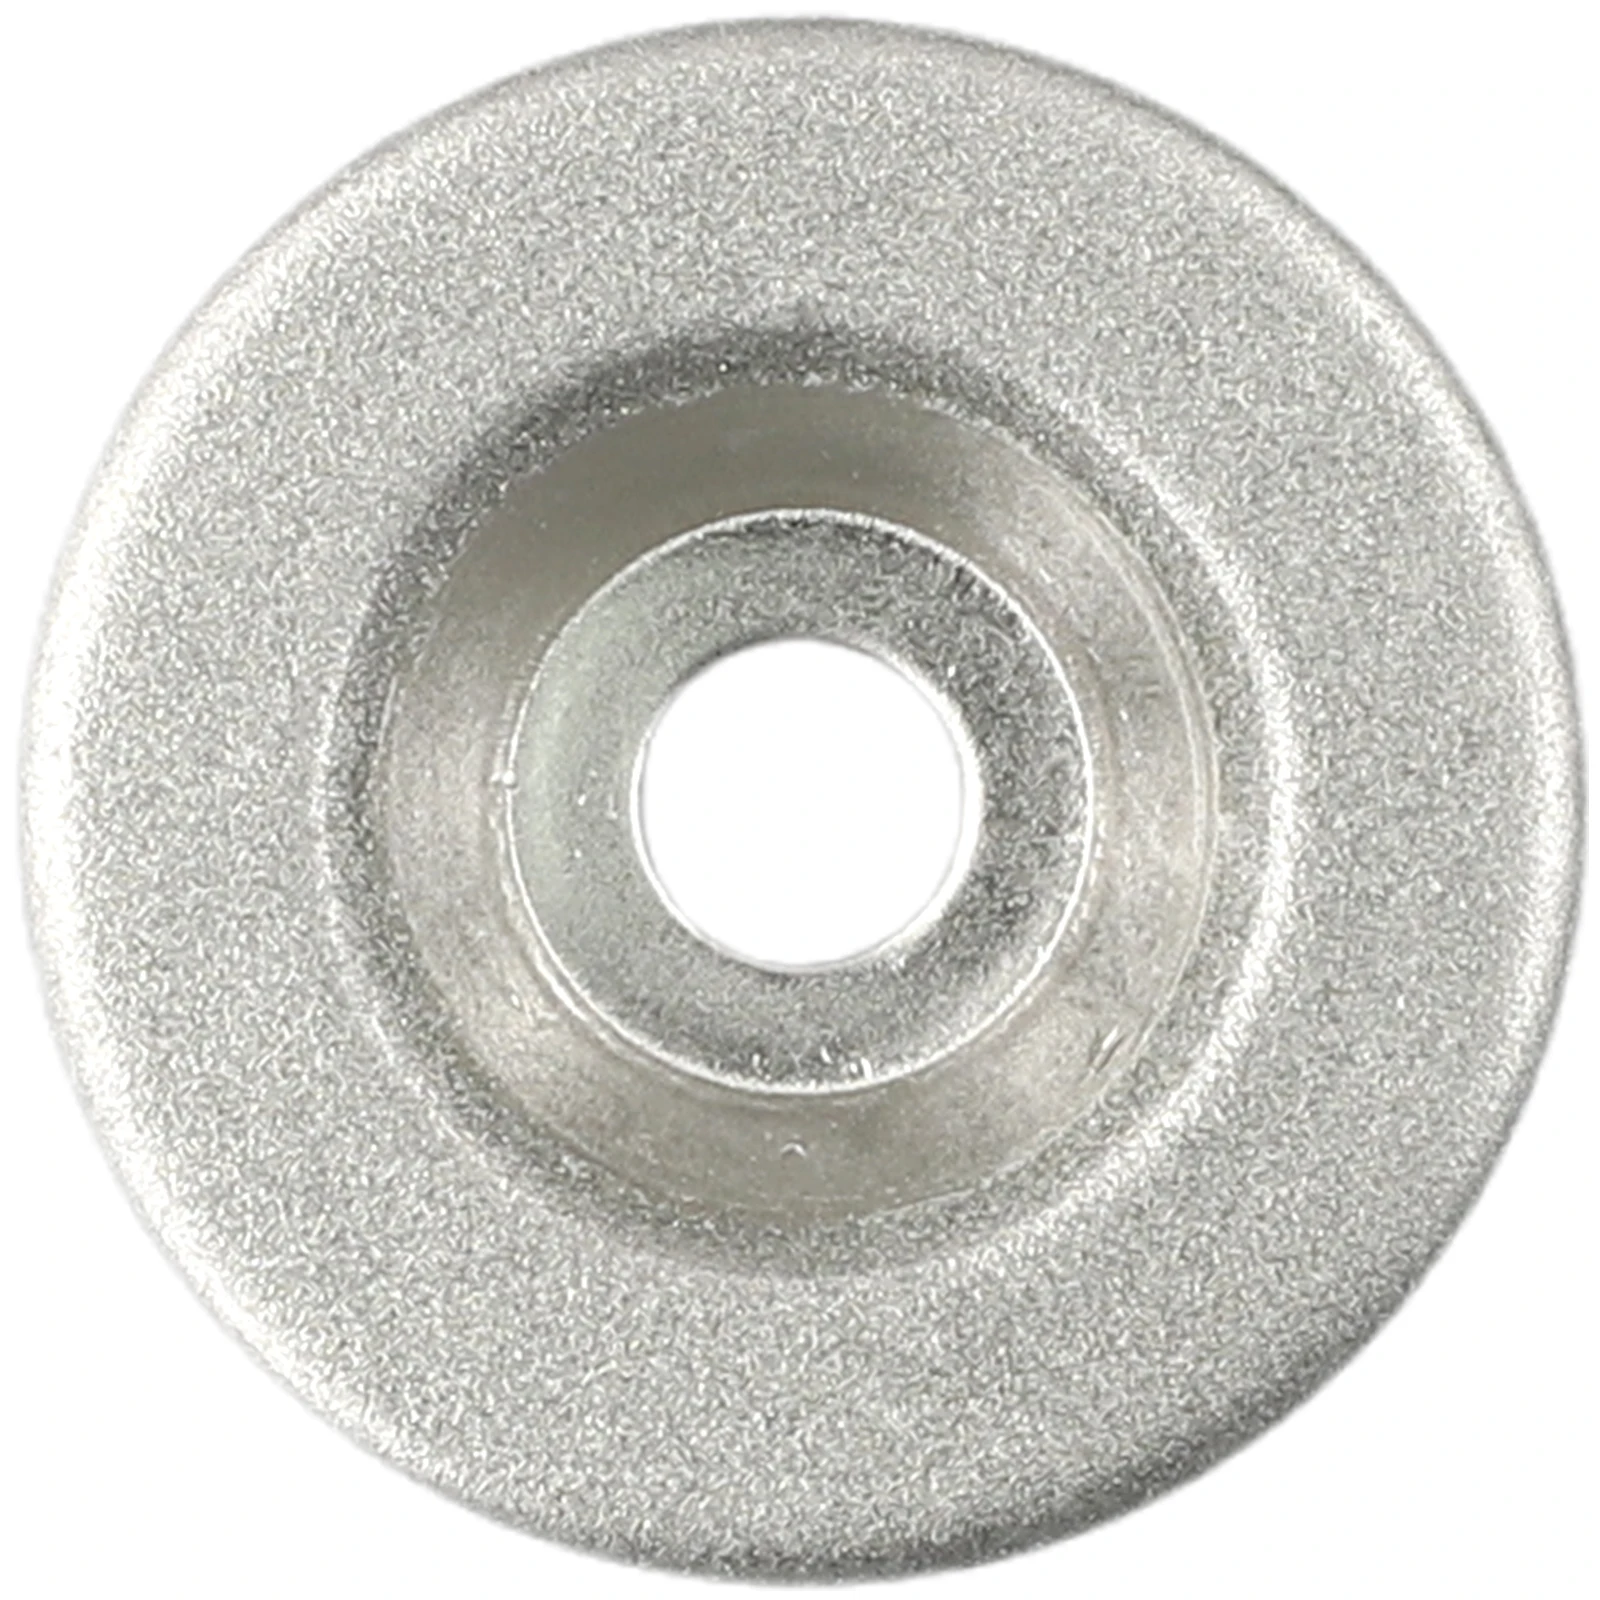 Деревообрабатывающий шлифовальный круг Алмазный полировальный диск 180 зернистость 50 мм Абразивный инструмент Шлифовальная машина с алмазным песком